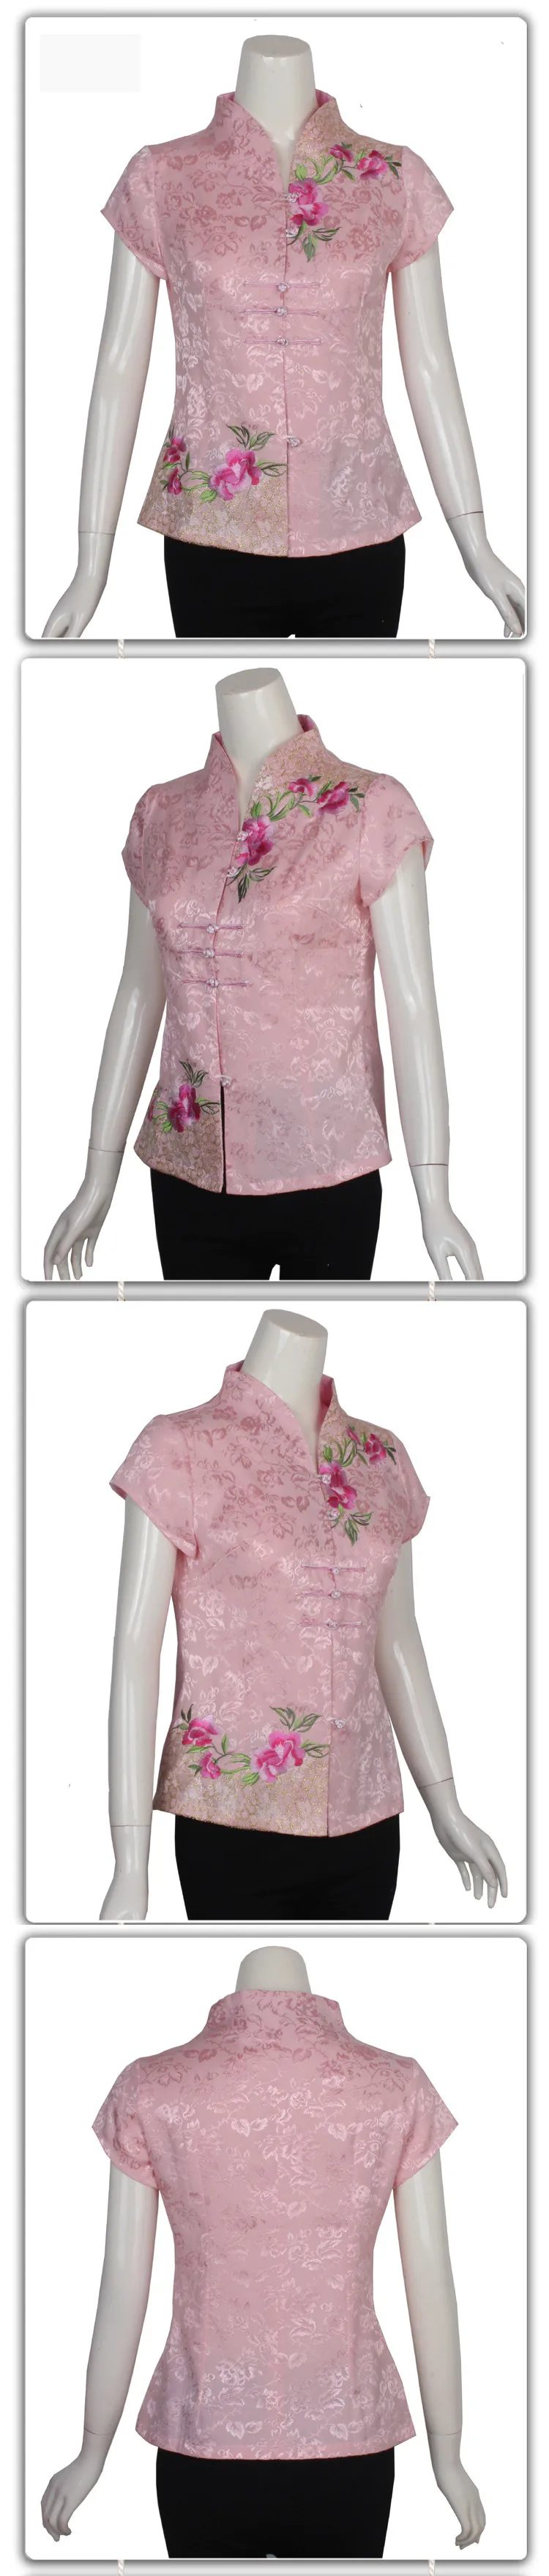 Сезон: весна–лето в традиционном китайском стиле Хлопок Вышитая блузка Топ Для женщин с цветочным рисунком Размеры M L XL XXL XXXL 4XL 080301